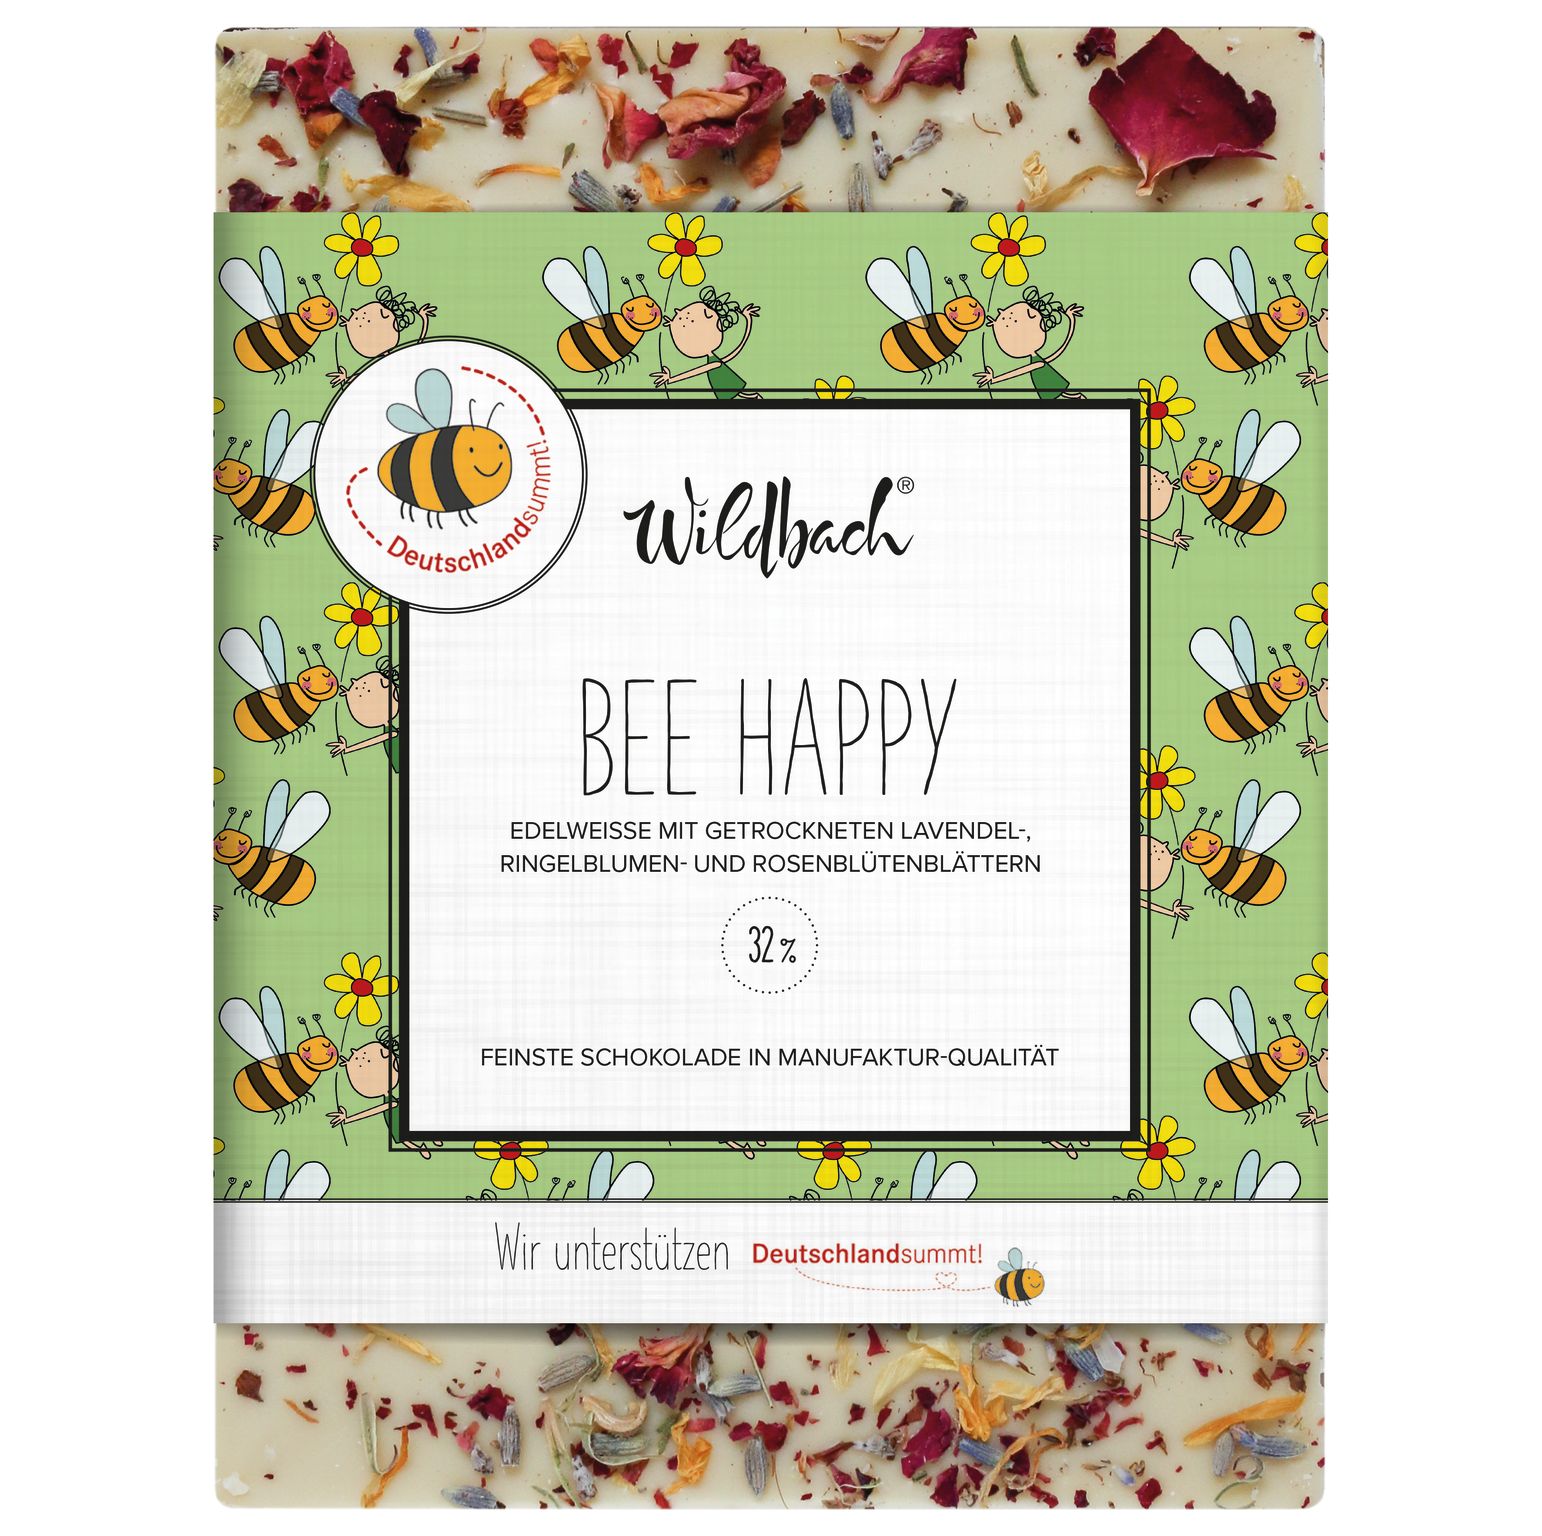 70g Tafel Deutschland summt Bee Happy - Feinste WS 31 %